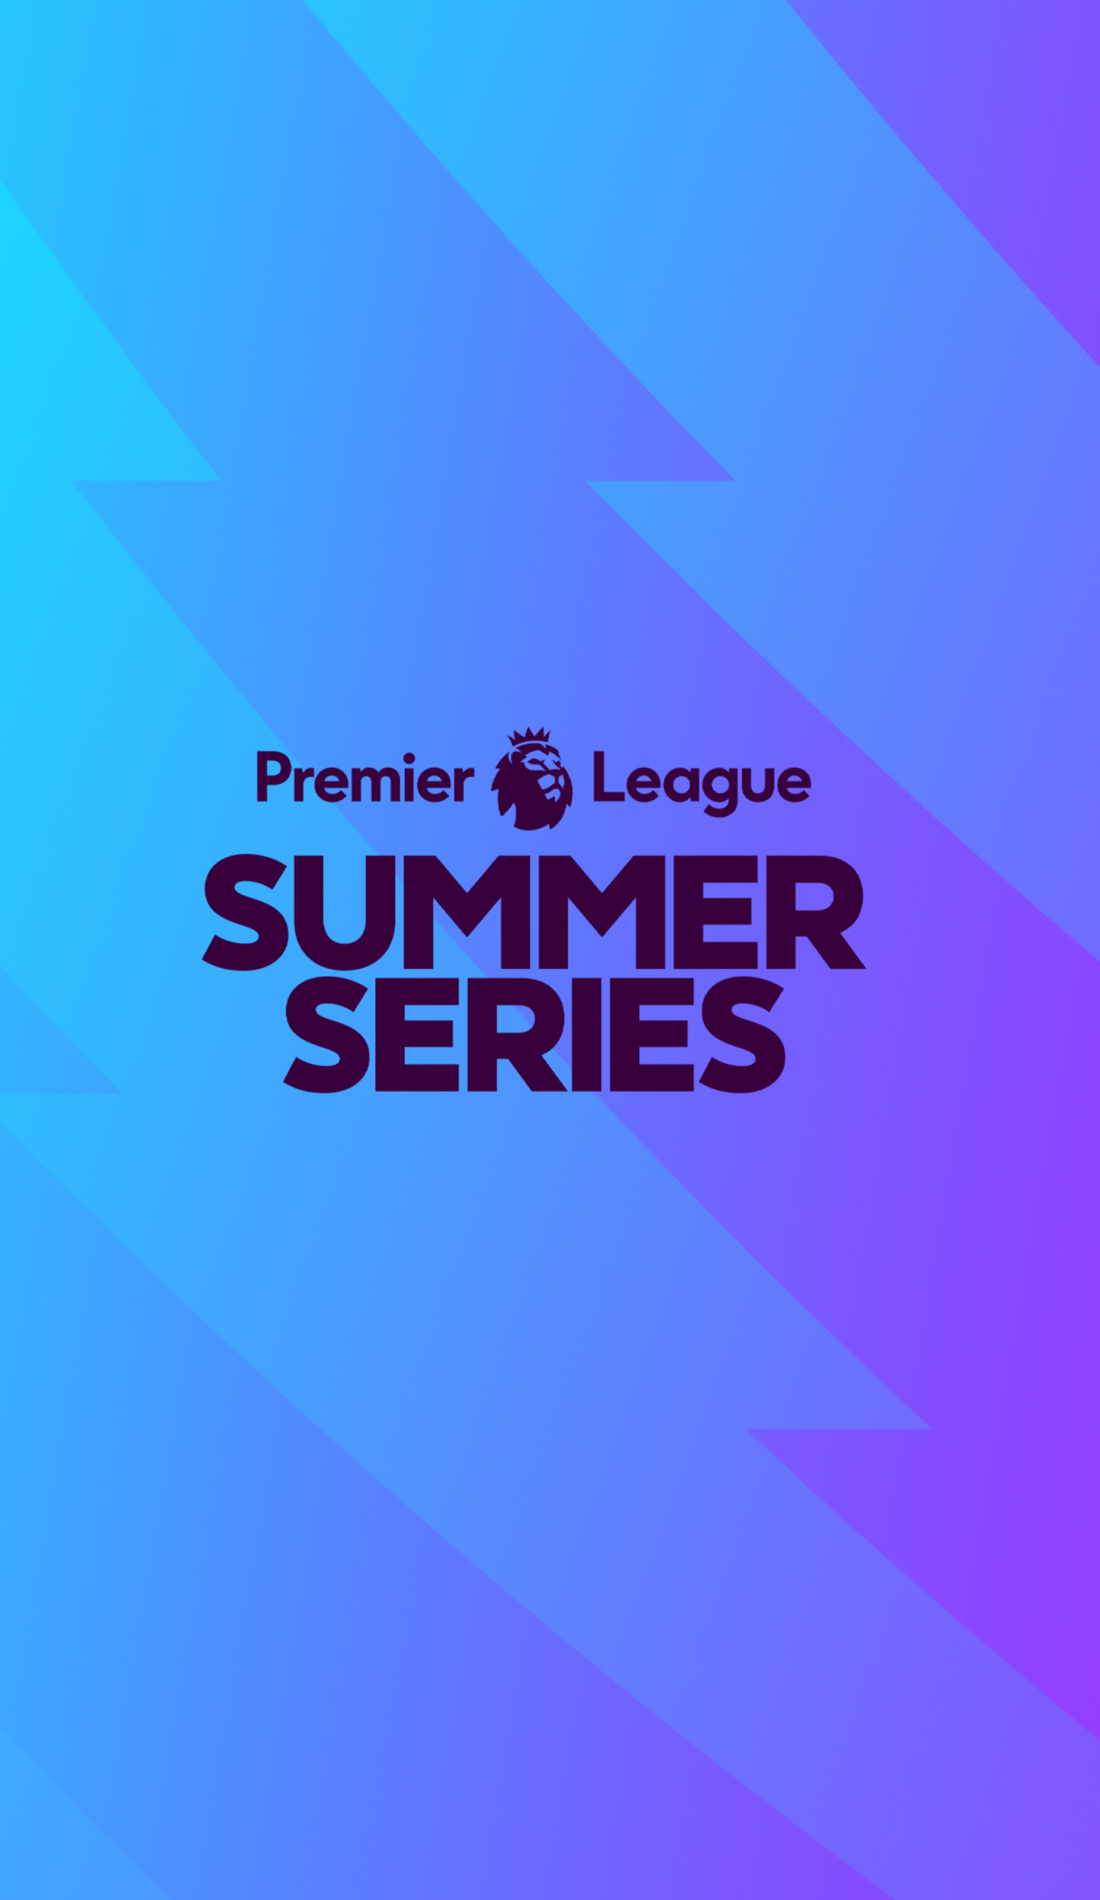 A Premier League Summer Series live event